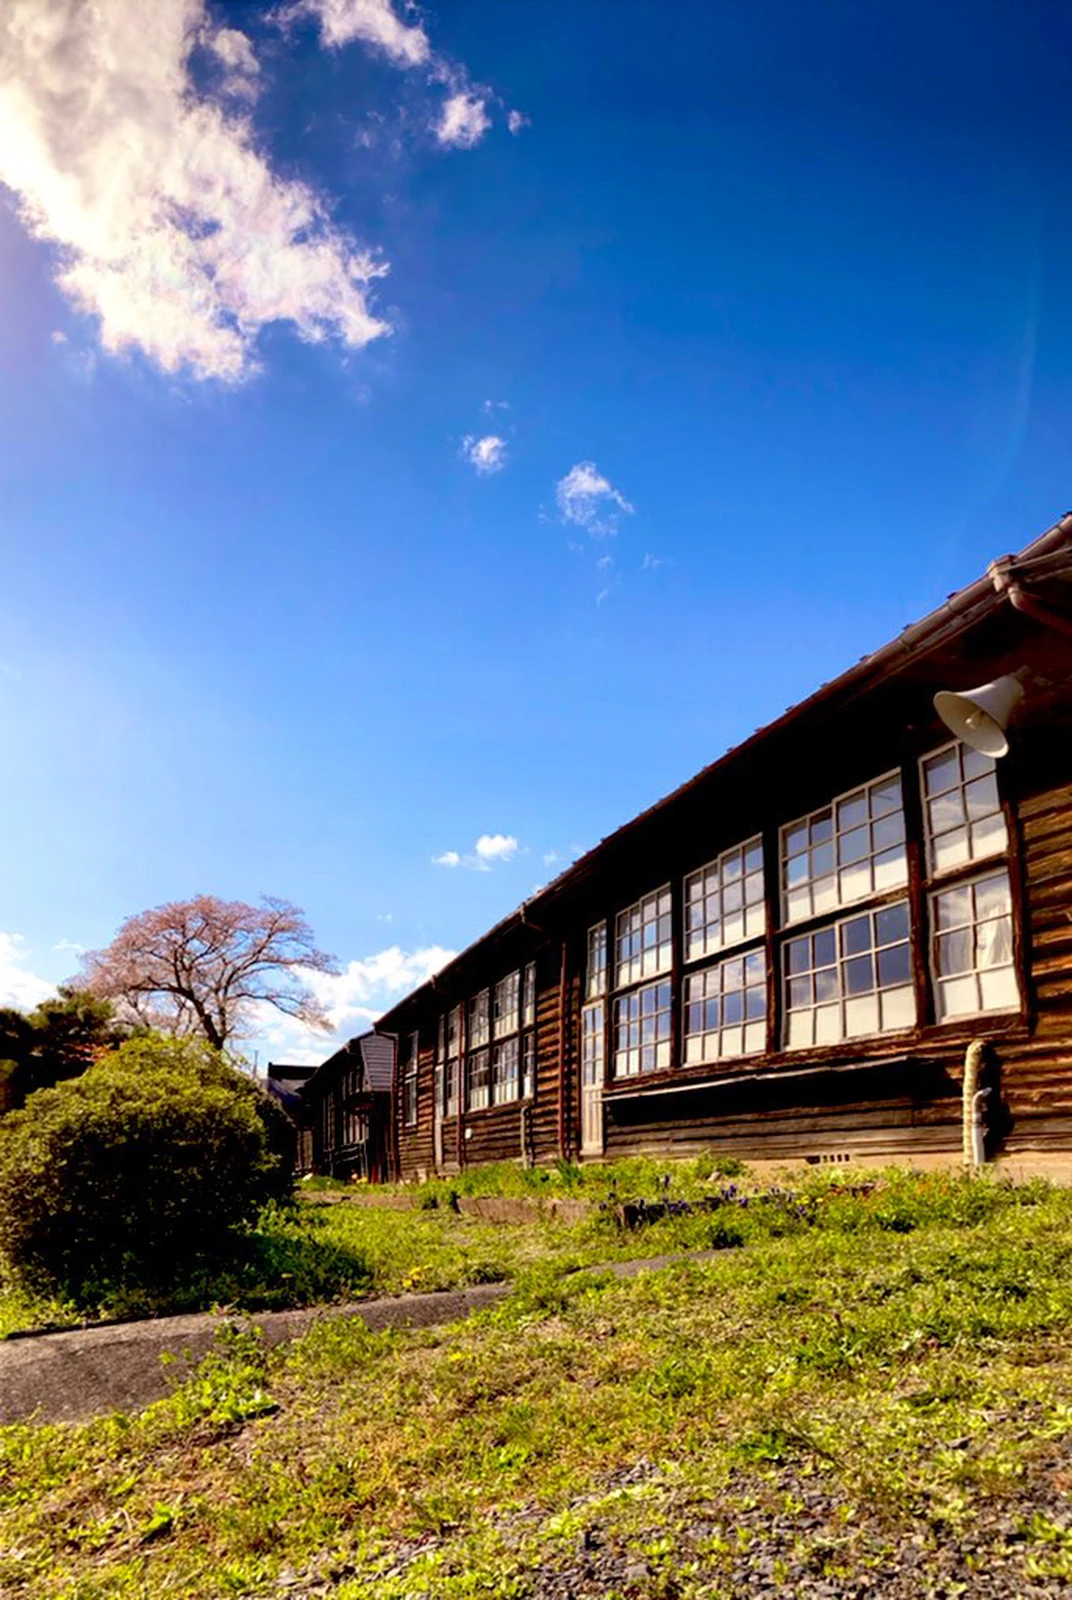 ノスタルジック 懐かしい木造校舎昭和へタイムトラベル メグ6007が投稿したフォトブック Lemon8